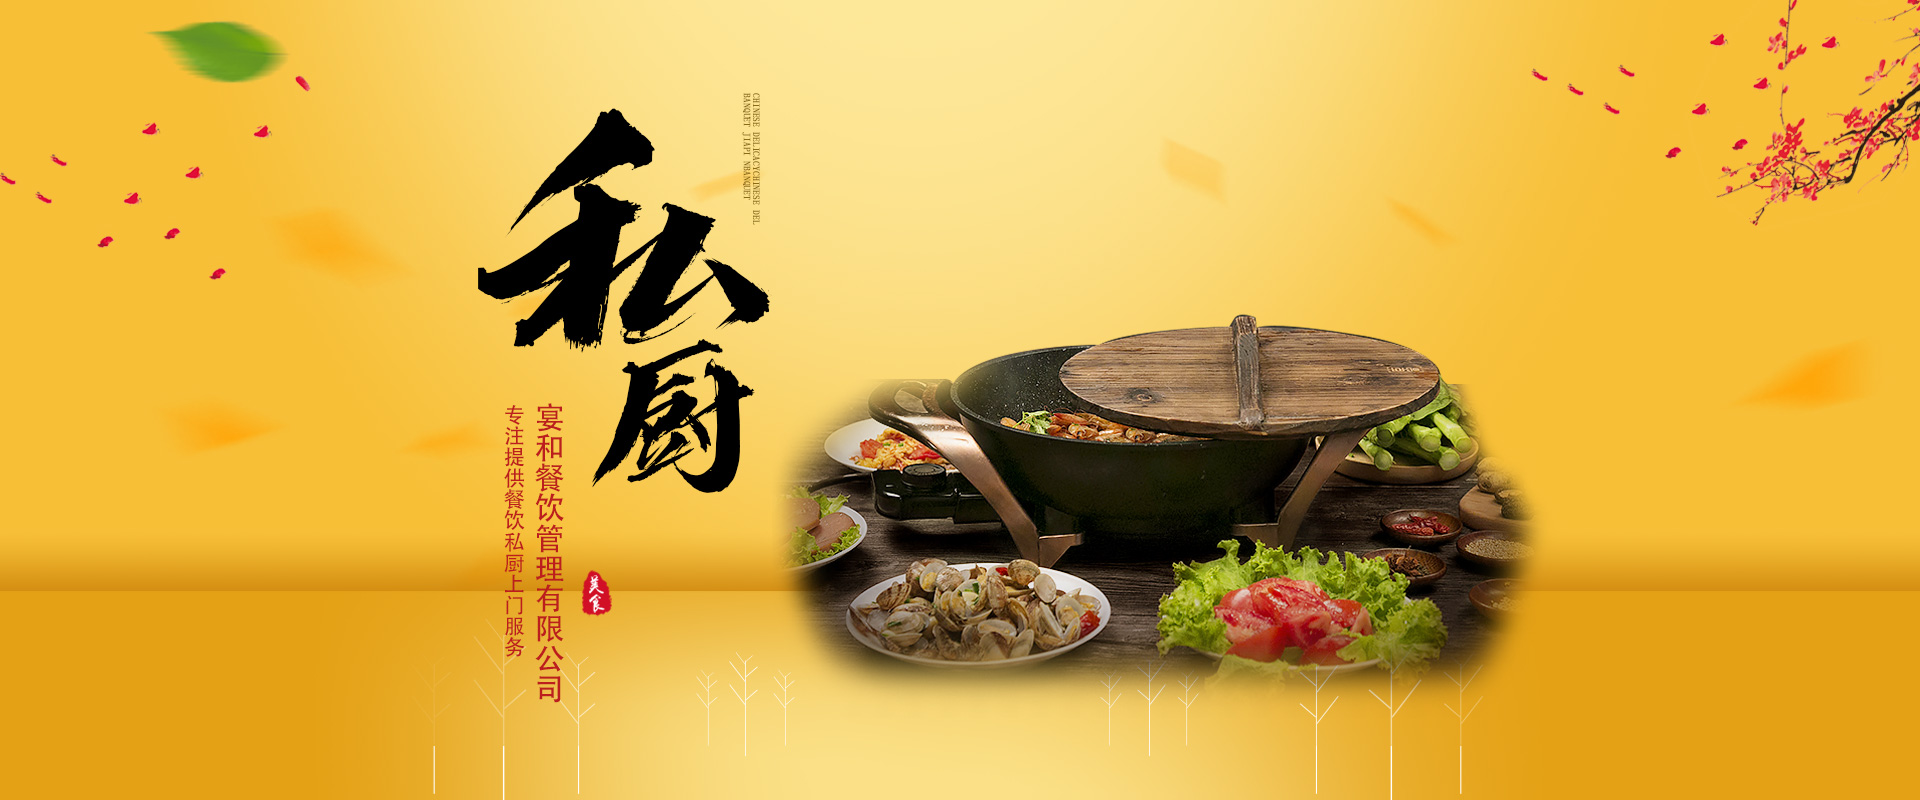 石家(jiā)莊團餐